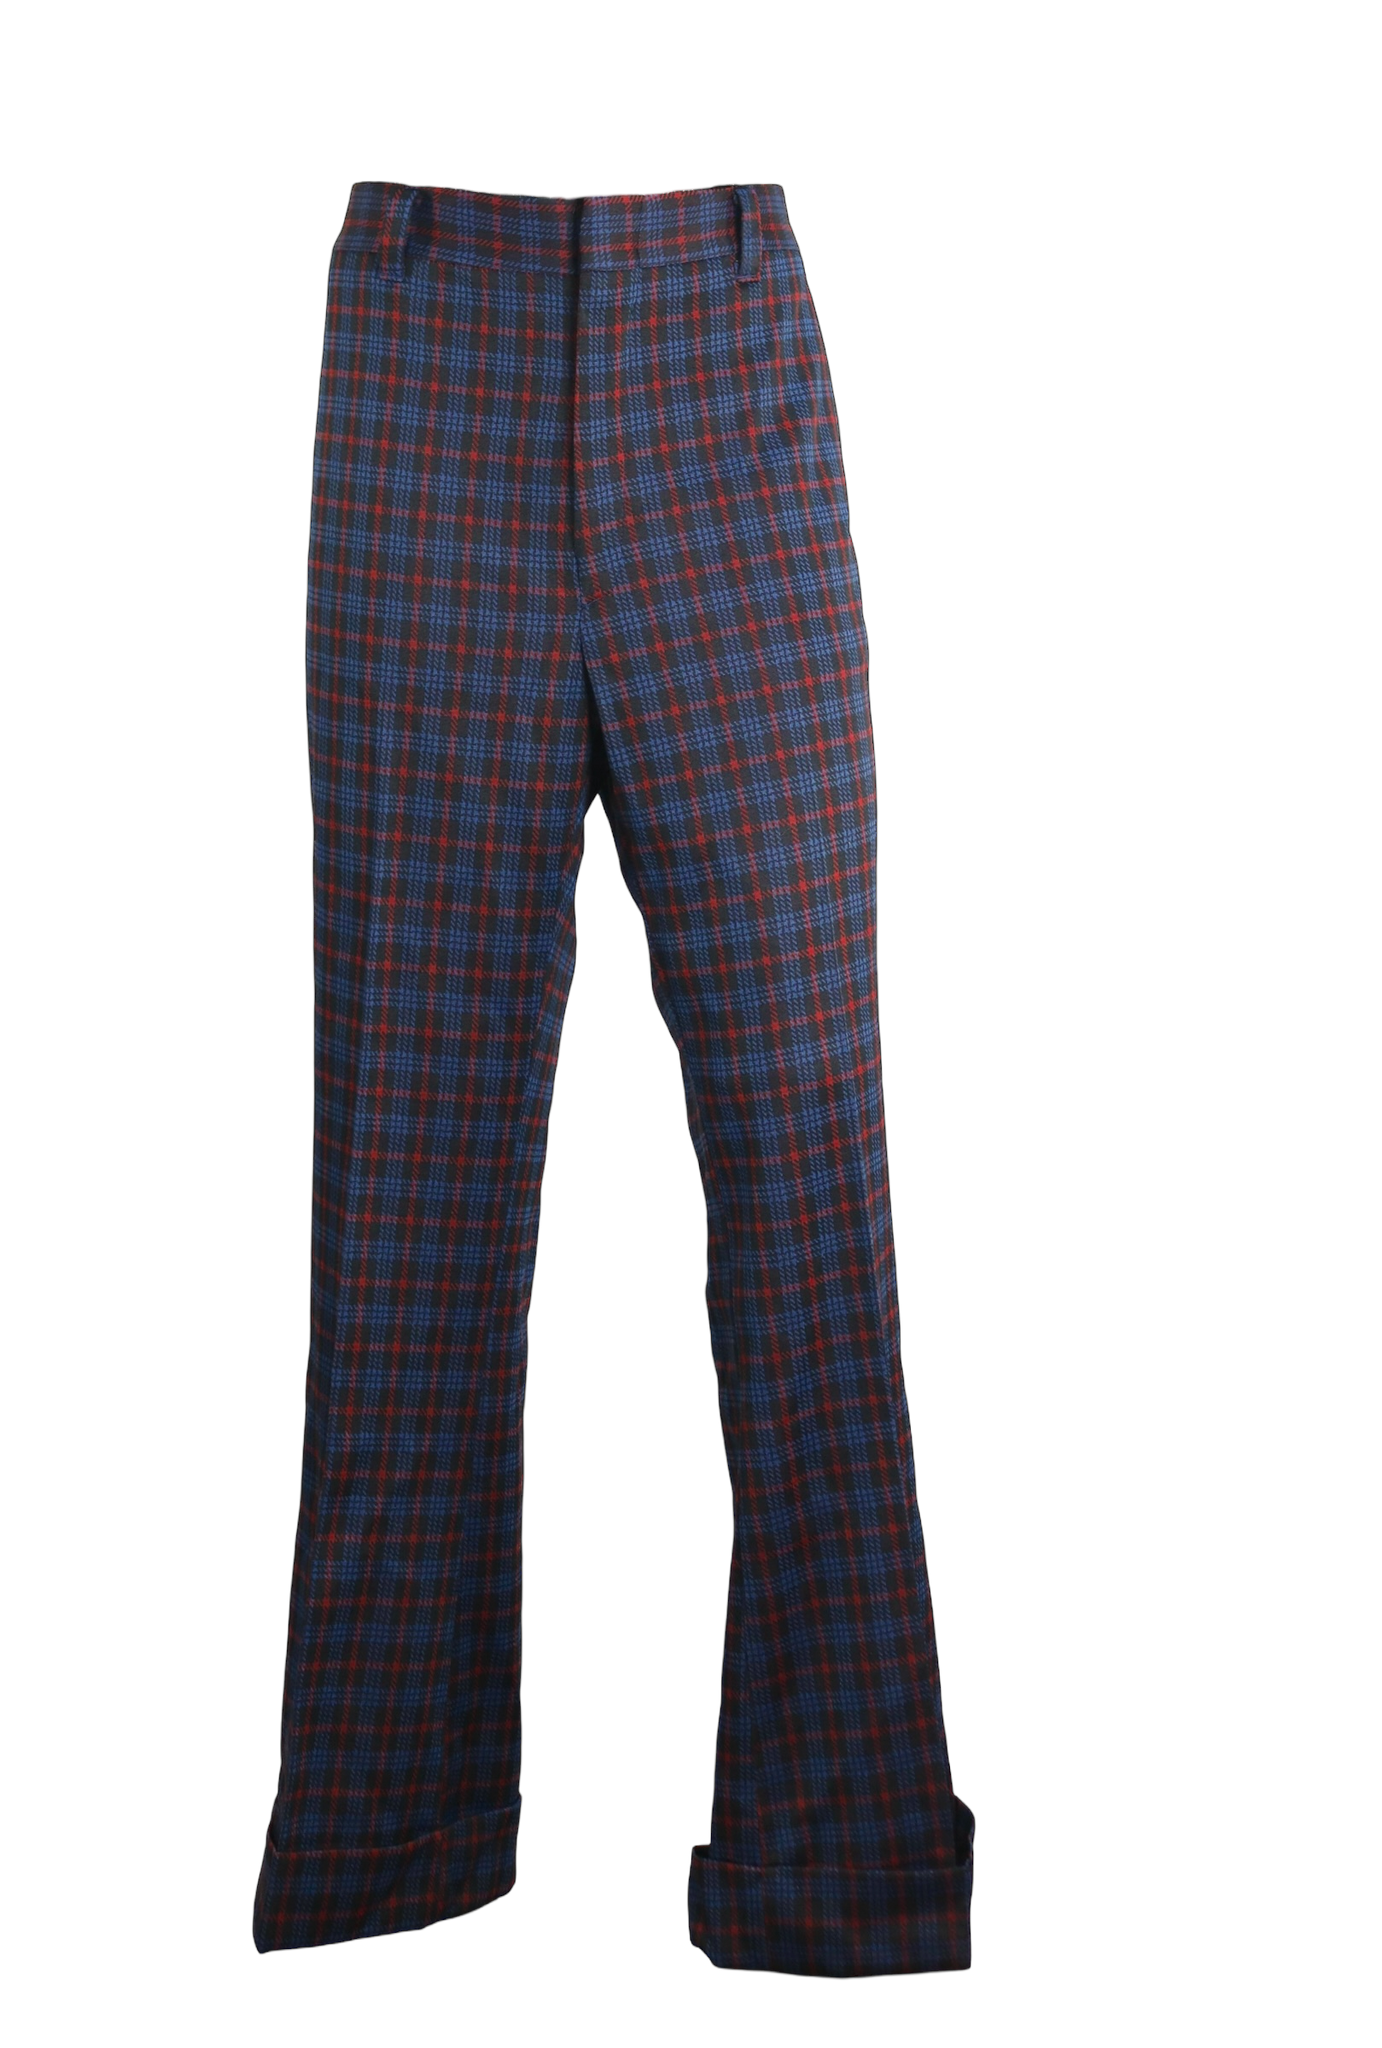 70s Black/Blue/Red Plaid Trouser Pants   w37